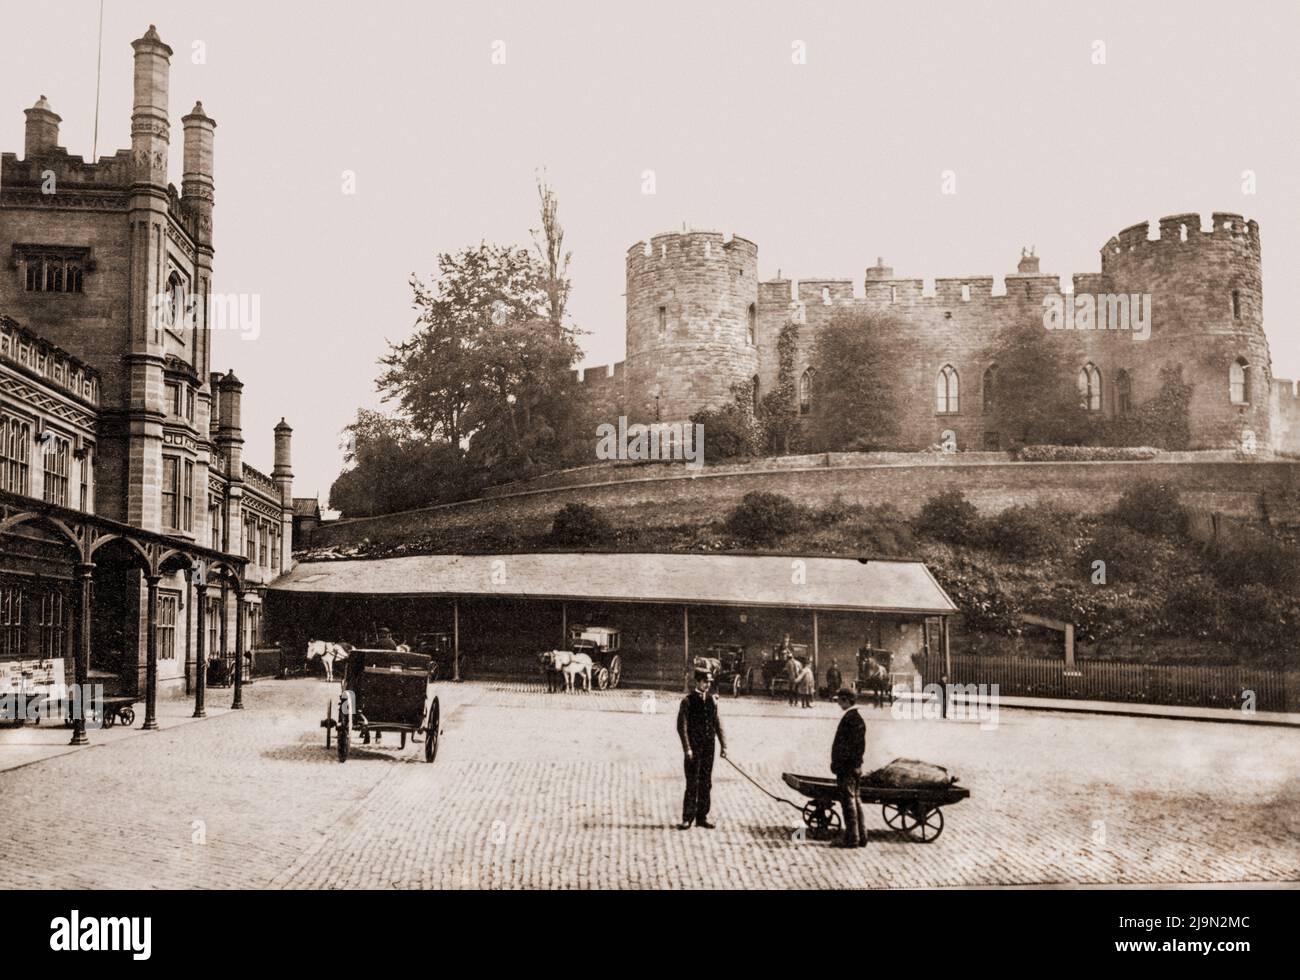 Château et gare de Shrewsbury, Angleterre, Royaume-Uni, vers 1885 Banque D'Images